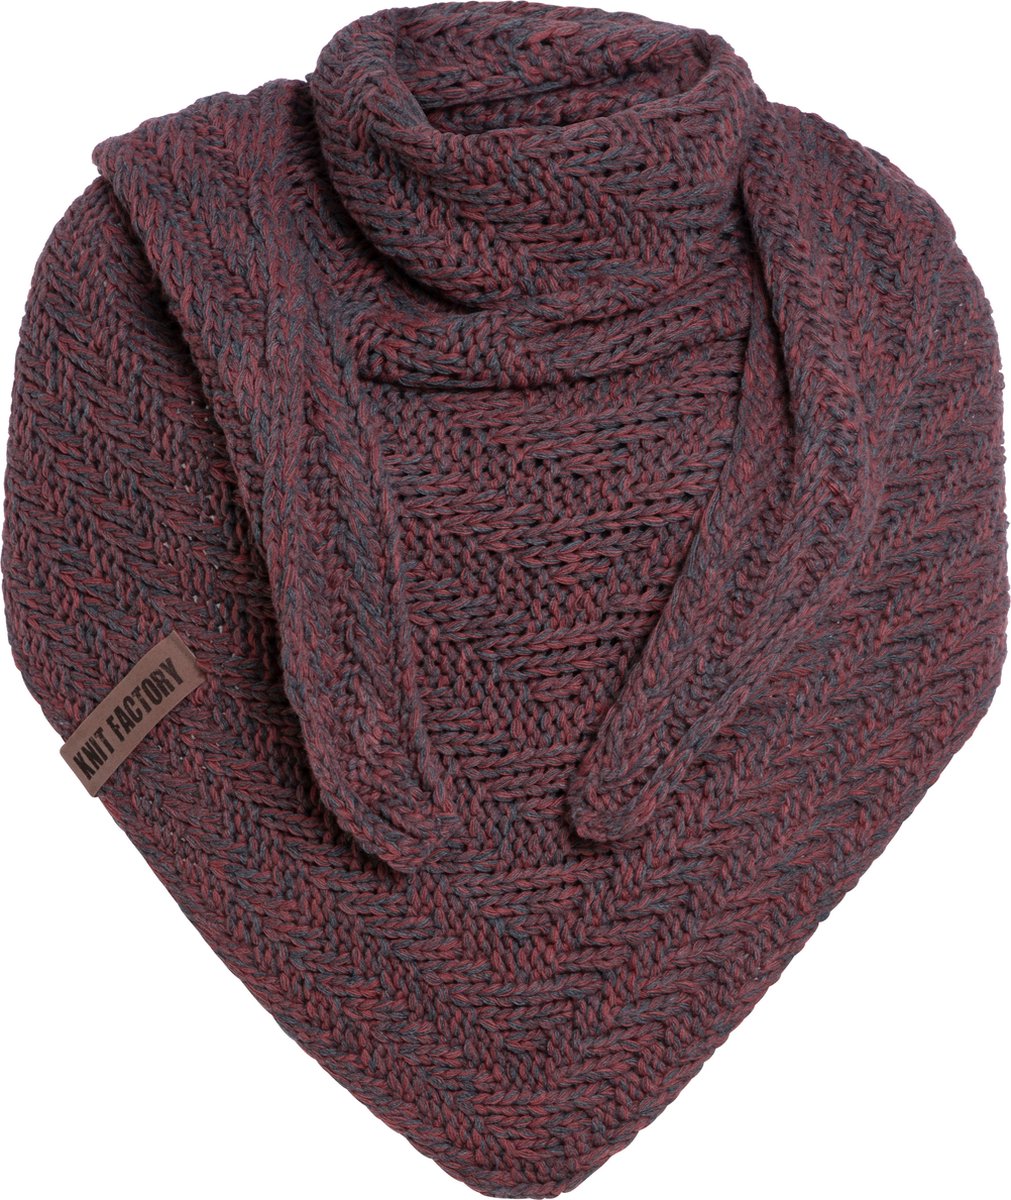 Knit Factory Sally Gebreide Omslagdoek - Driehoek Sjaal Dames - Dames sjaal - Wintersjaal - Stola - Wollen sjaal - Grijs rood gemêleerde sjaal - Antraciet/Stone Red - 220x85 cm - Grof gebreid